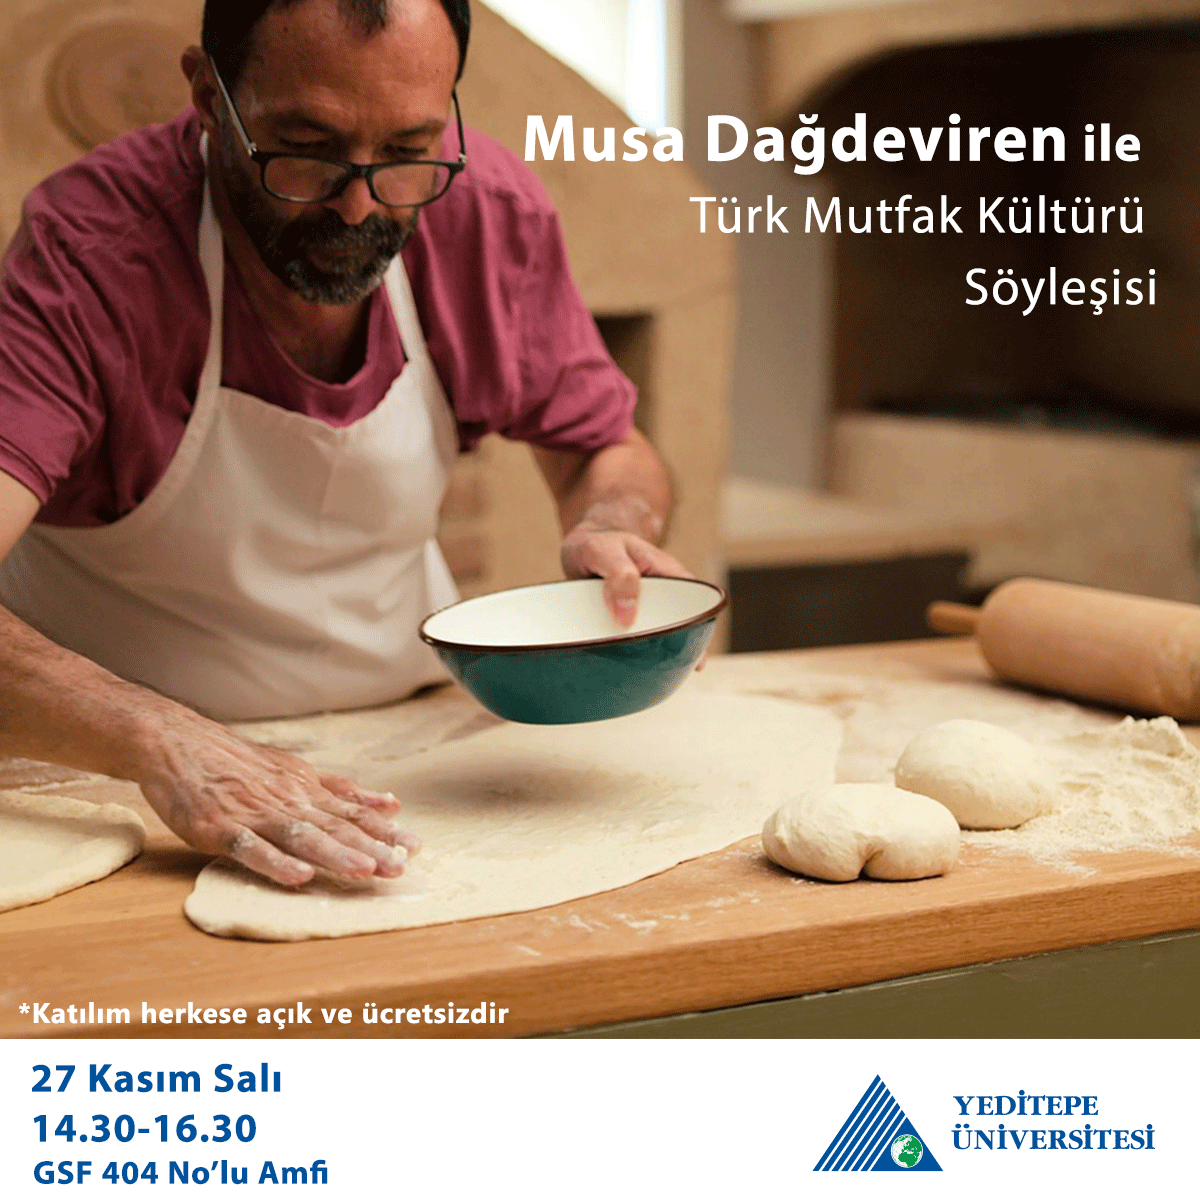 Musa Dağdeviren ile Türk Mutfak Kültürü Söyleşisi